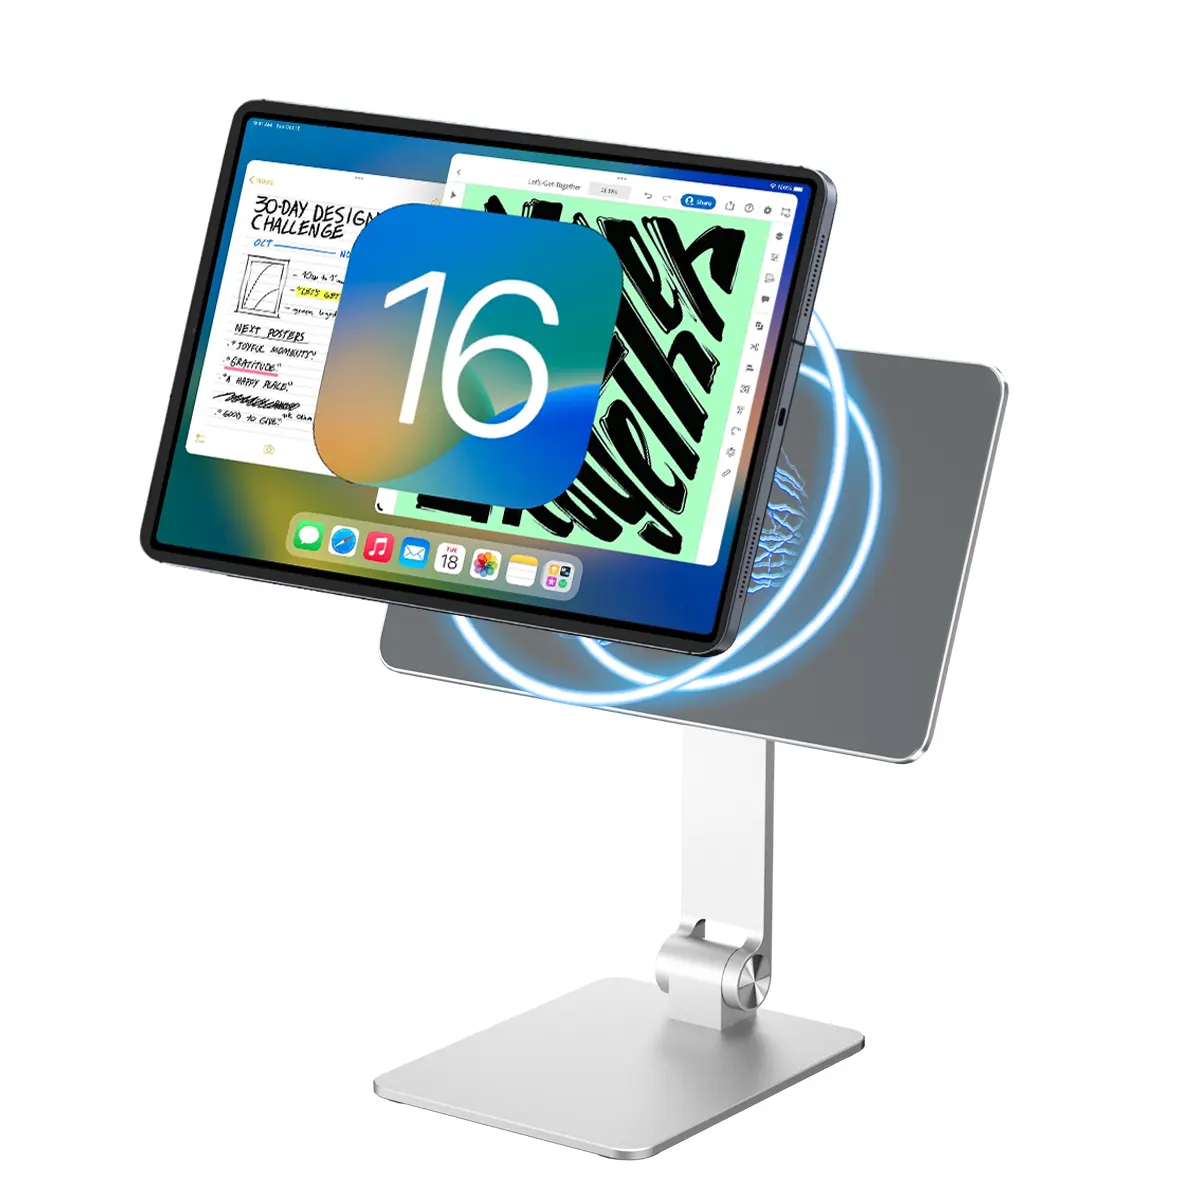 Dudukan iPad ergonomis dapat dilipat, dudukan magnetik Multi sudut dapat disesuaikan untuk iPad Pro/Air